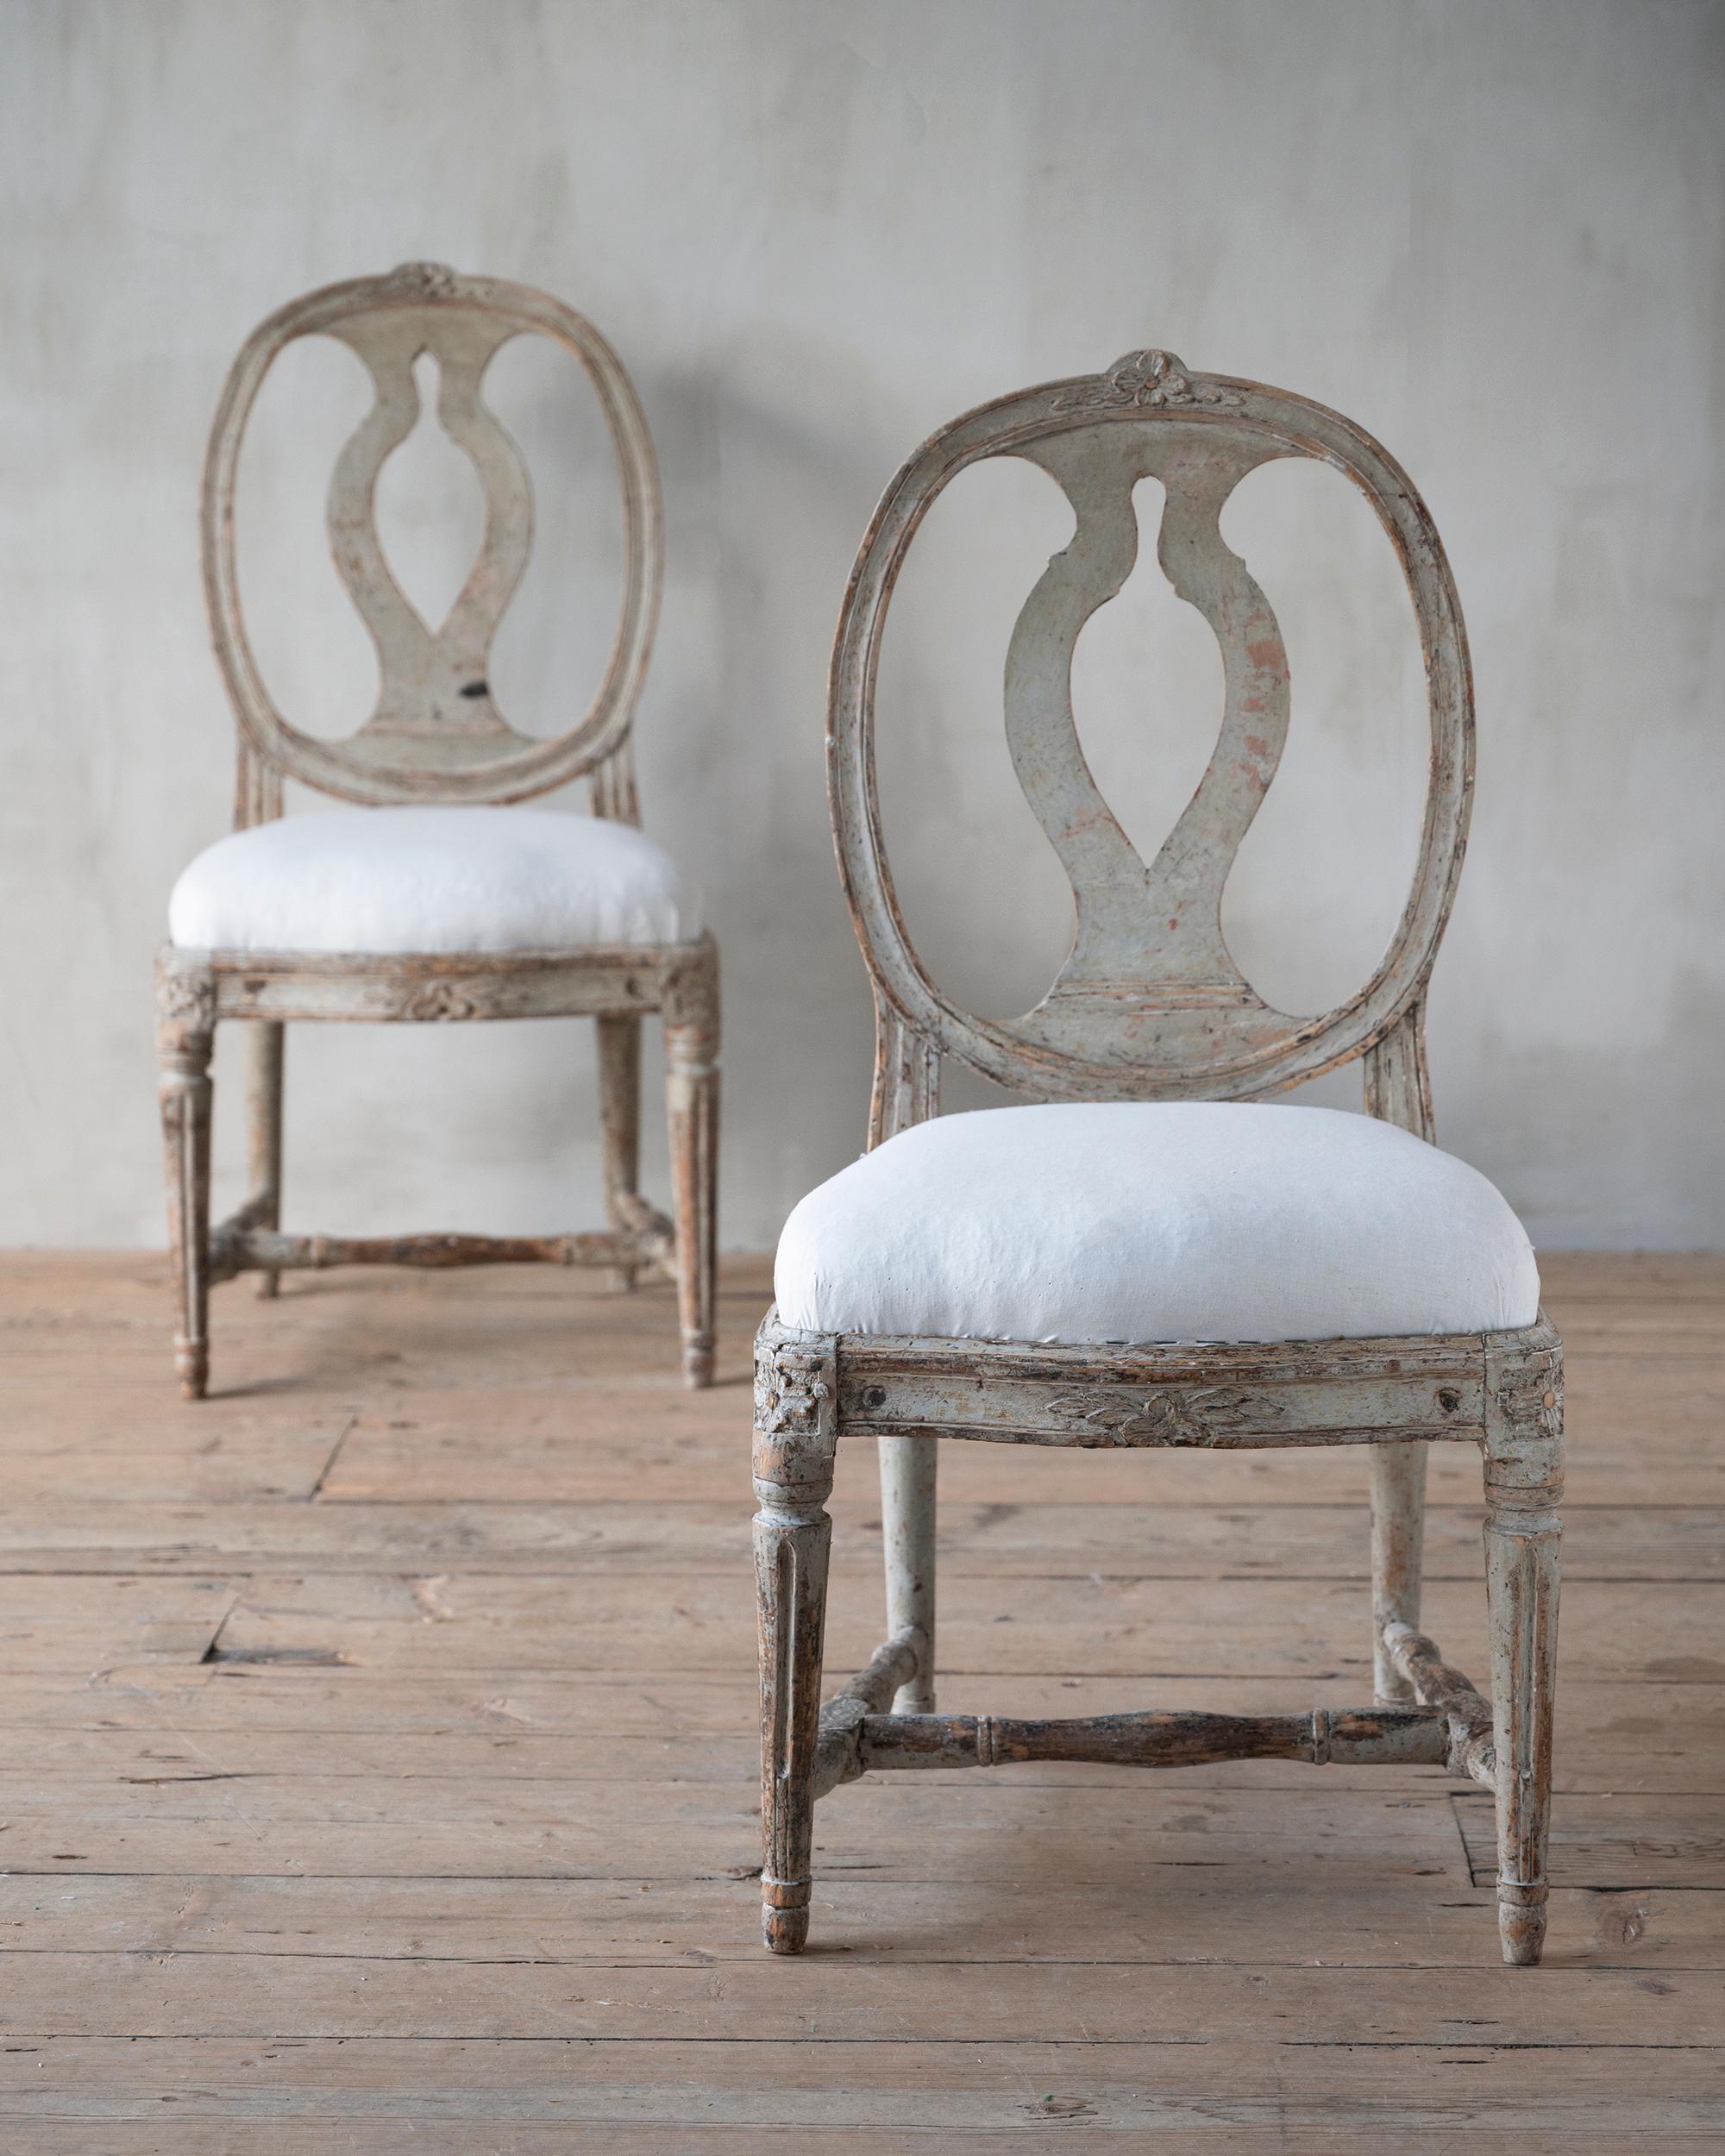 Belle paire de chaises gustaviennes (modèle suédois) du XIXe siècle, dans leur couleur d'origine, avec une grande usure de la surface. 